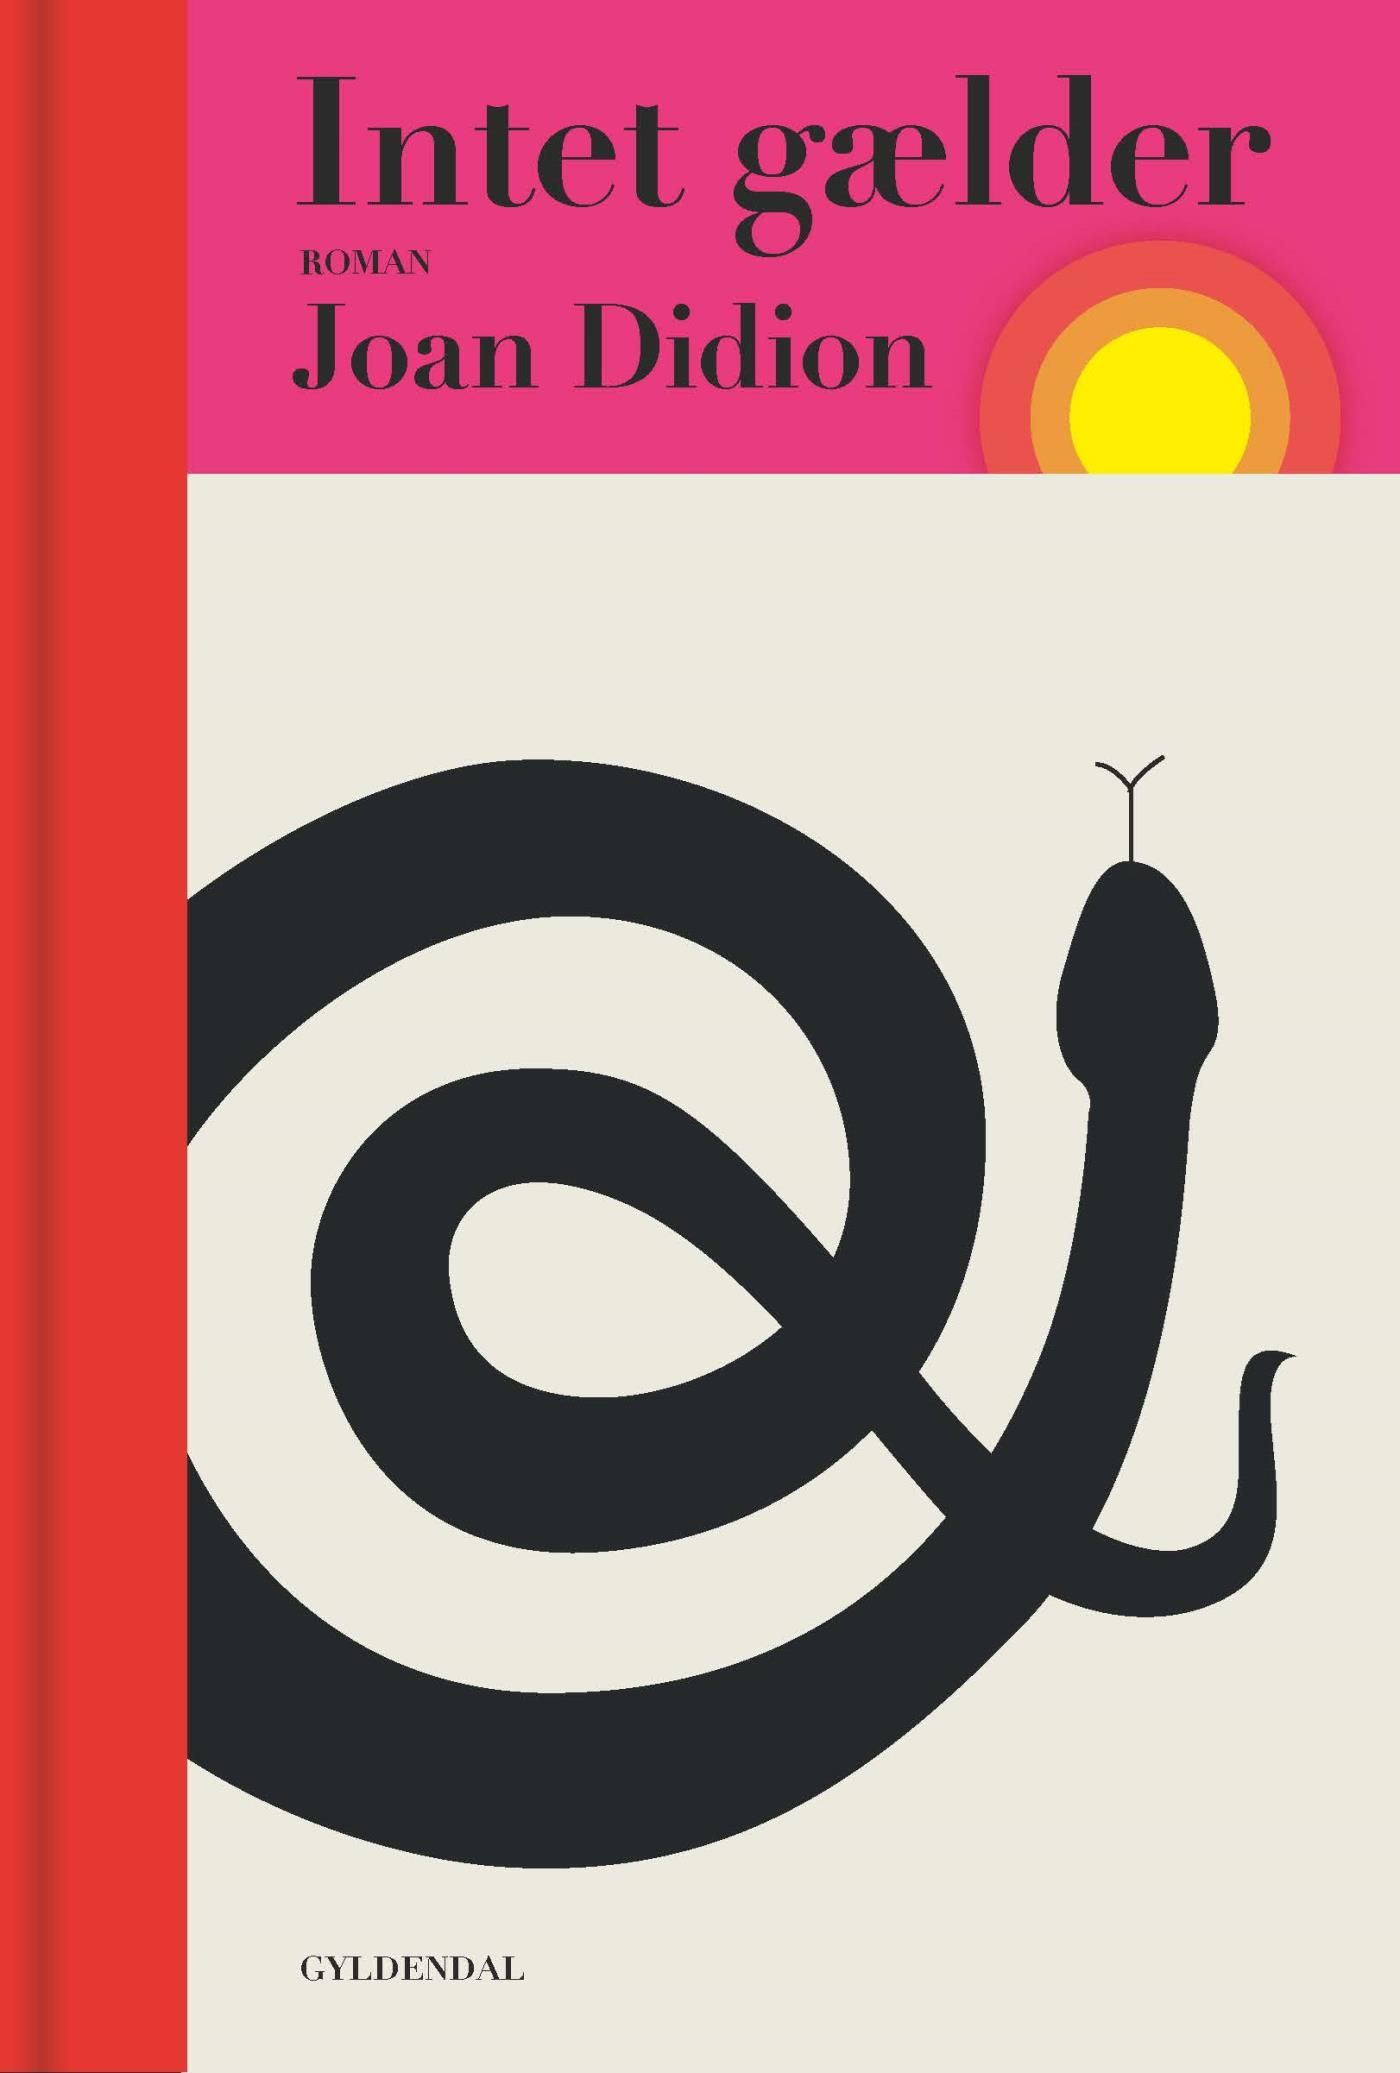 Intet gælder, e-bok av Joan Didion